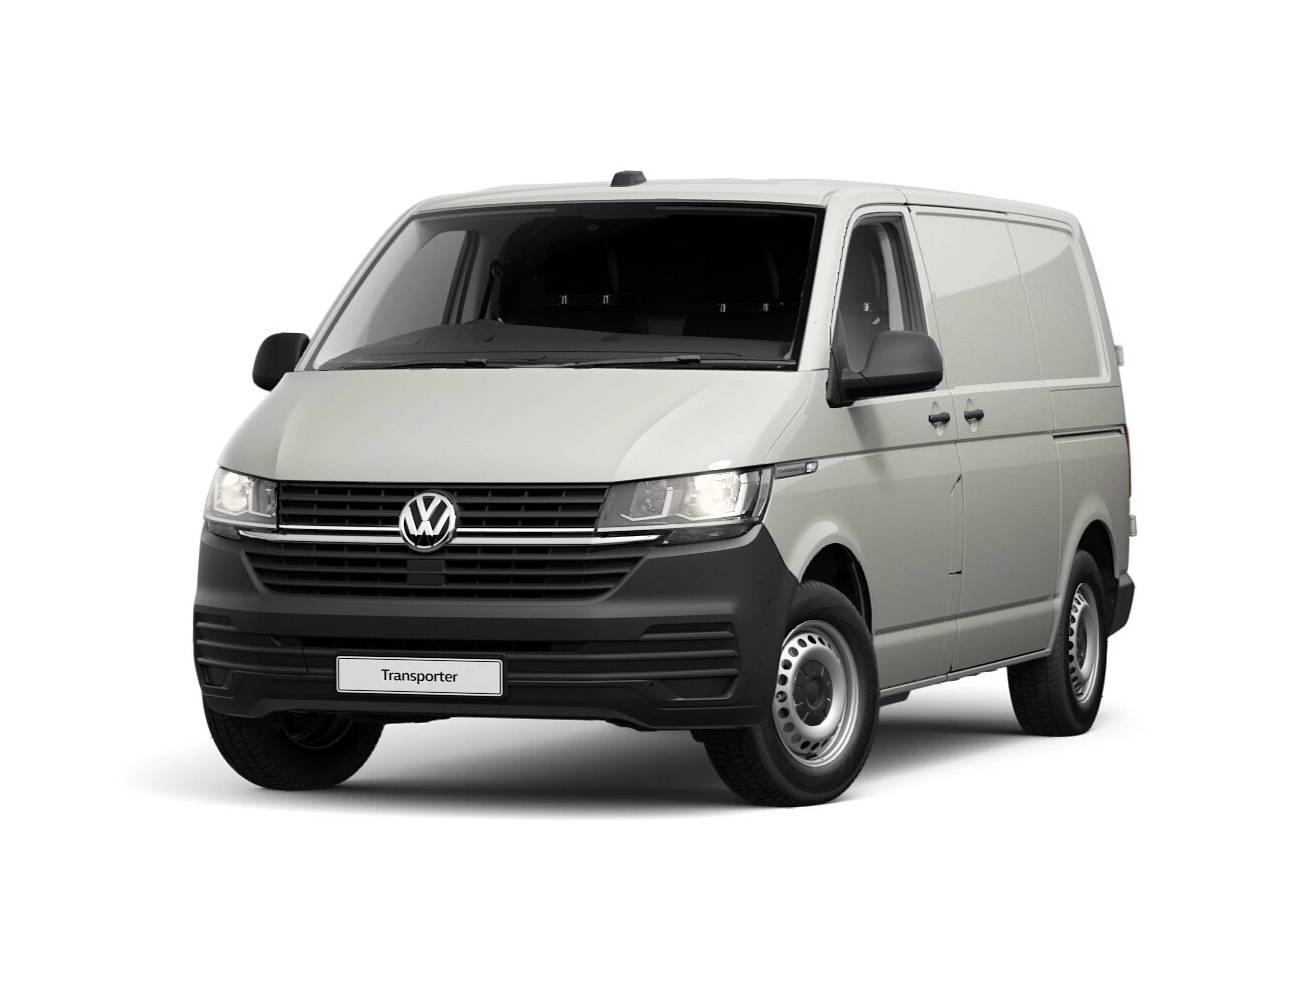 New Volkswagen Transporter Offers 